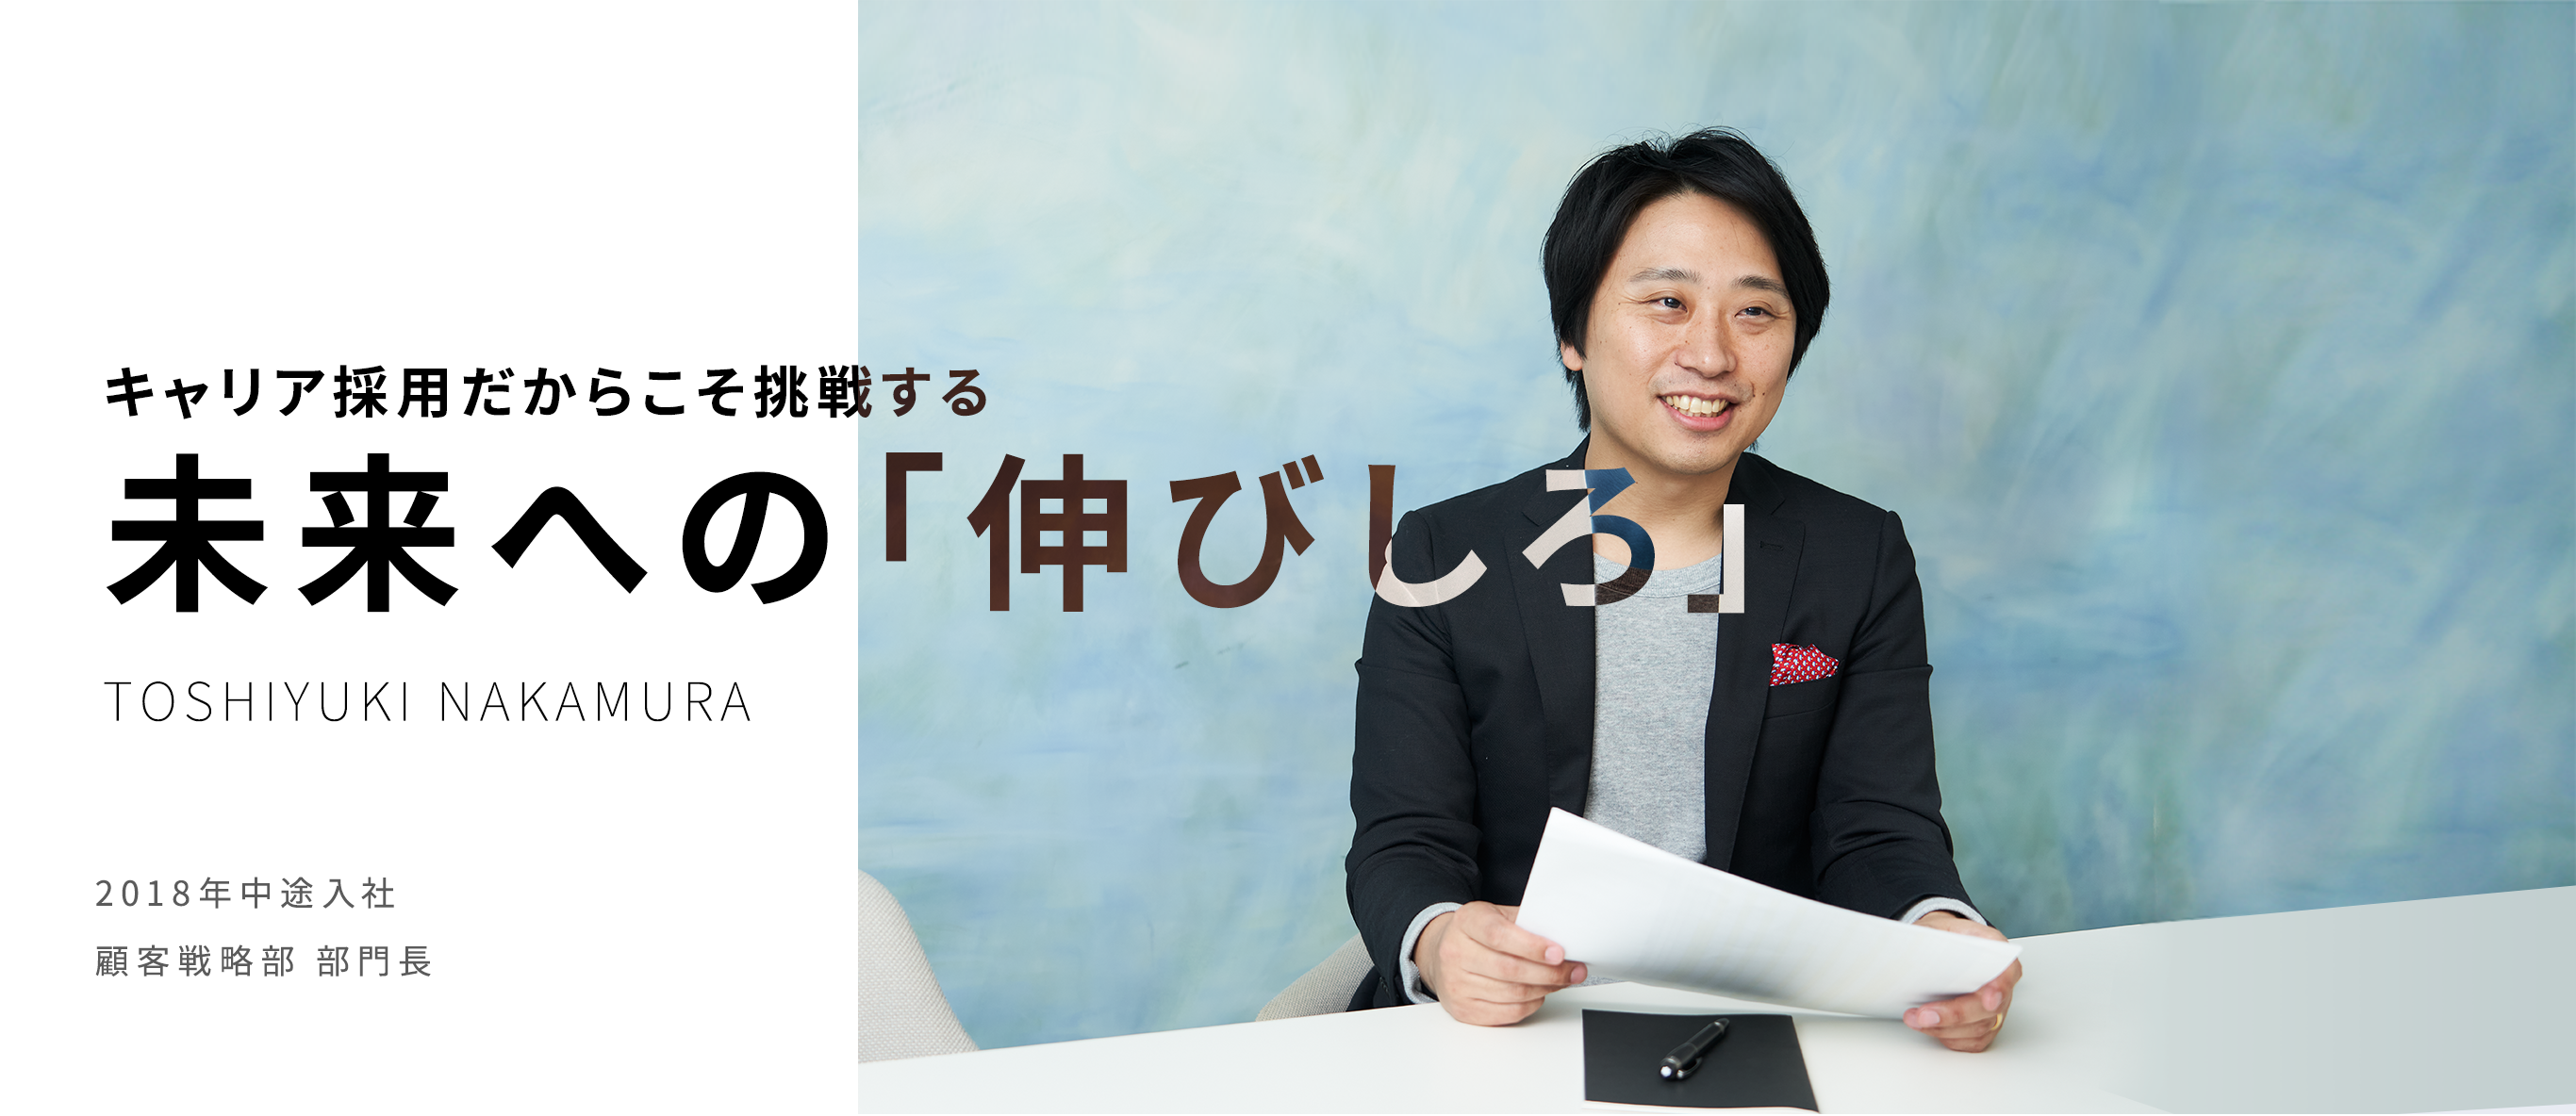 キャリア採用だからこそ挑戦する未来への「伸びしろ」 TOSHIYUKI NAKAMURA 2018年中途入社 顧客戦略部 部門長